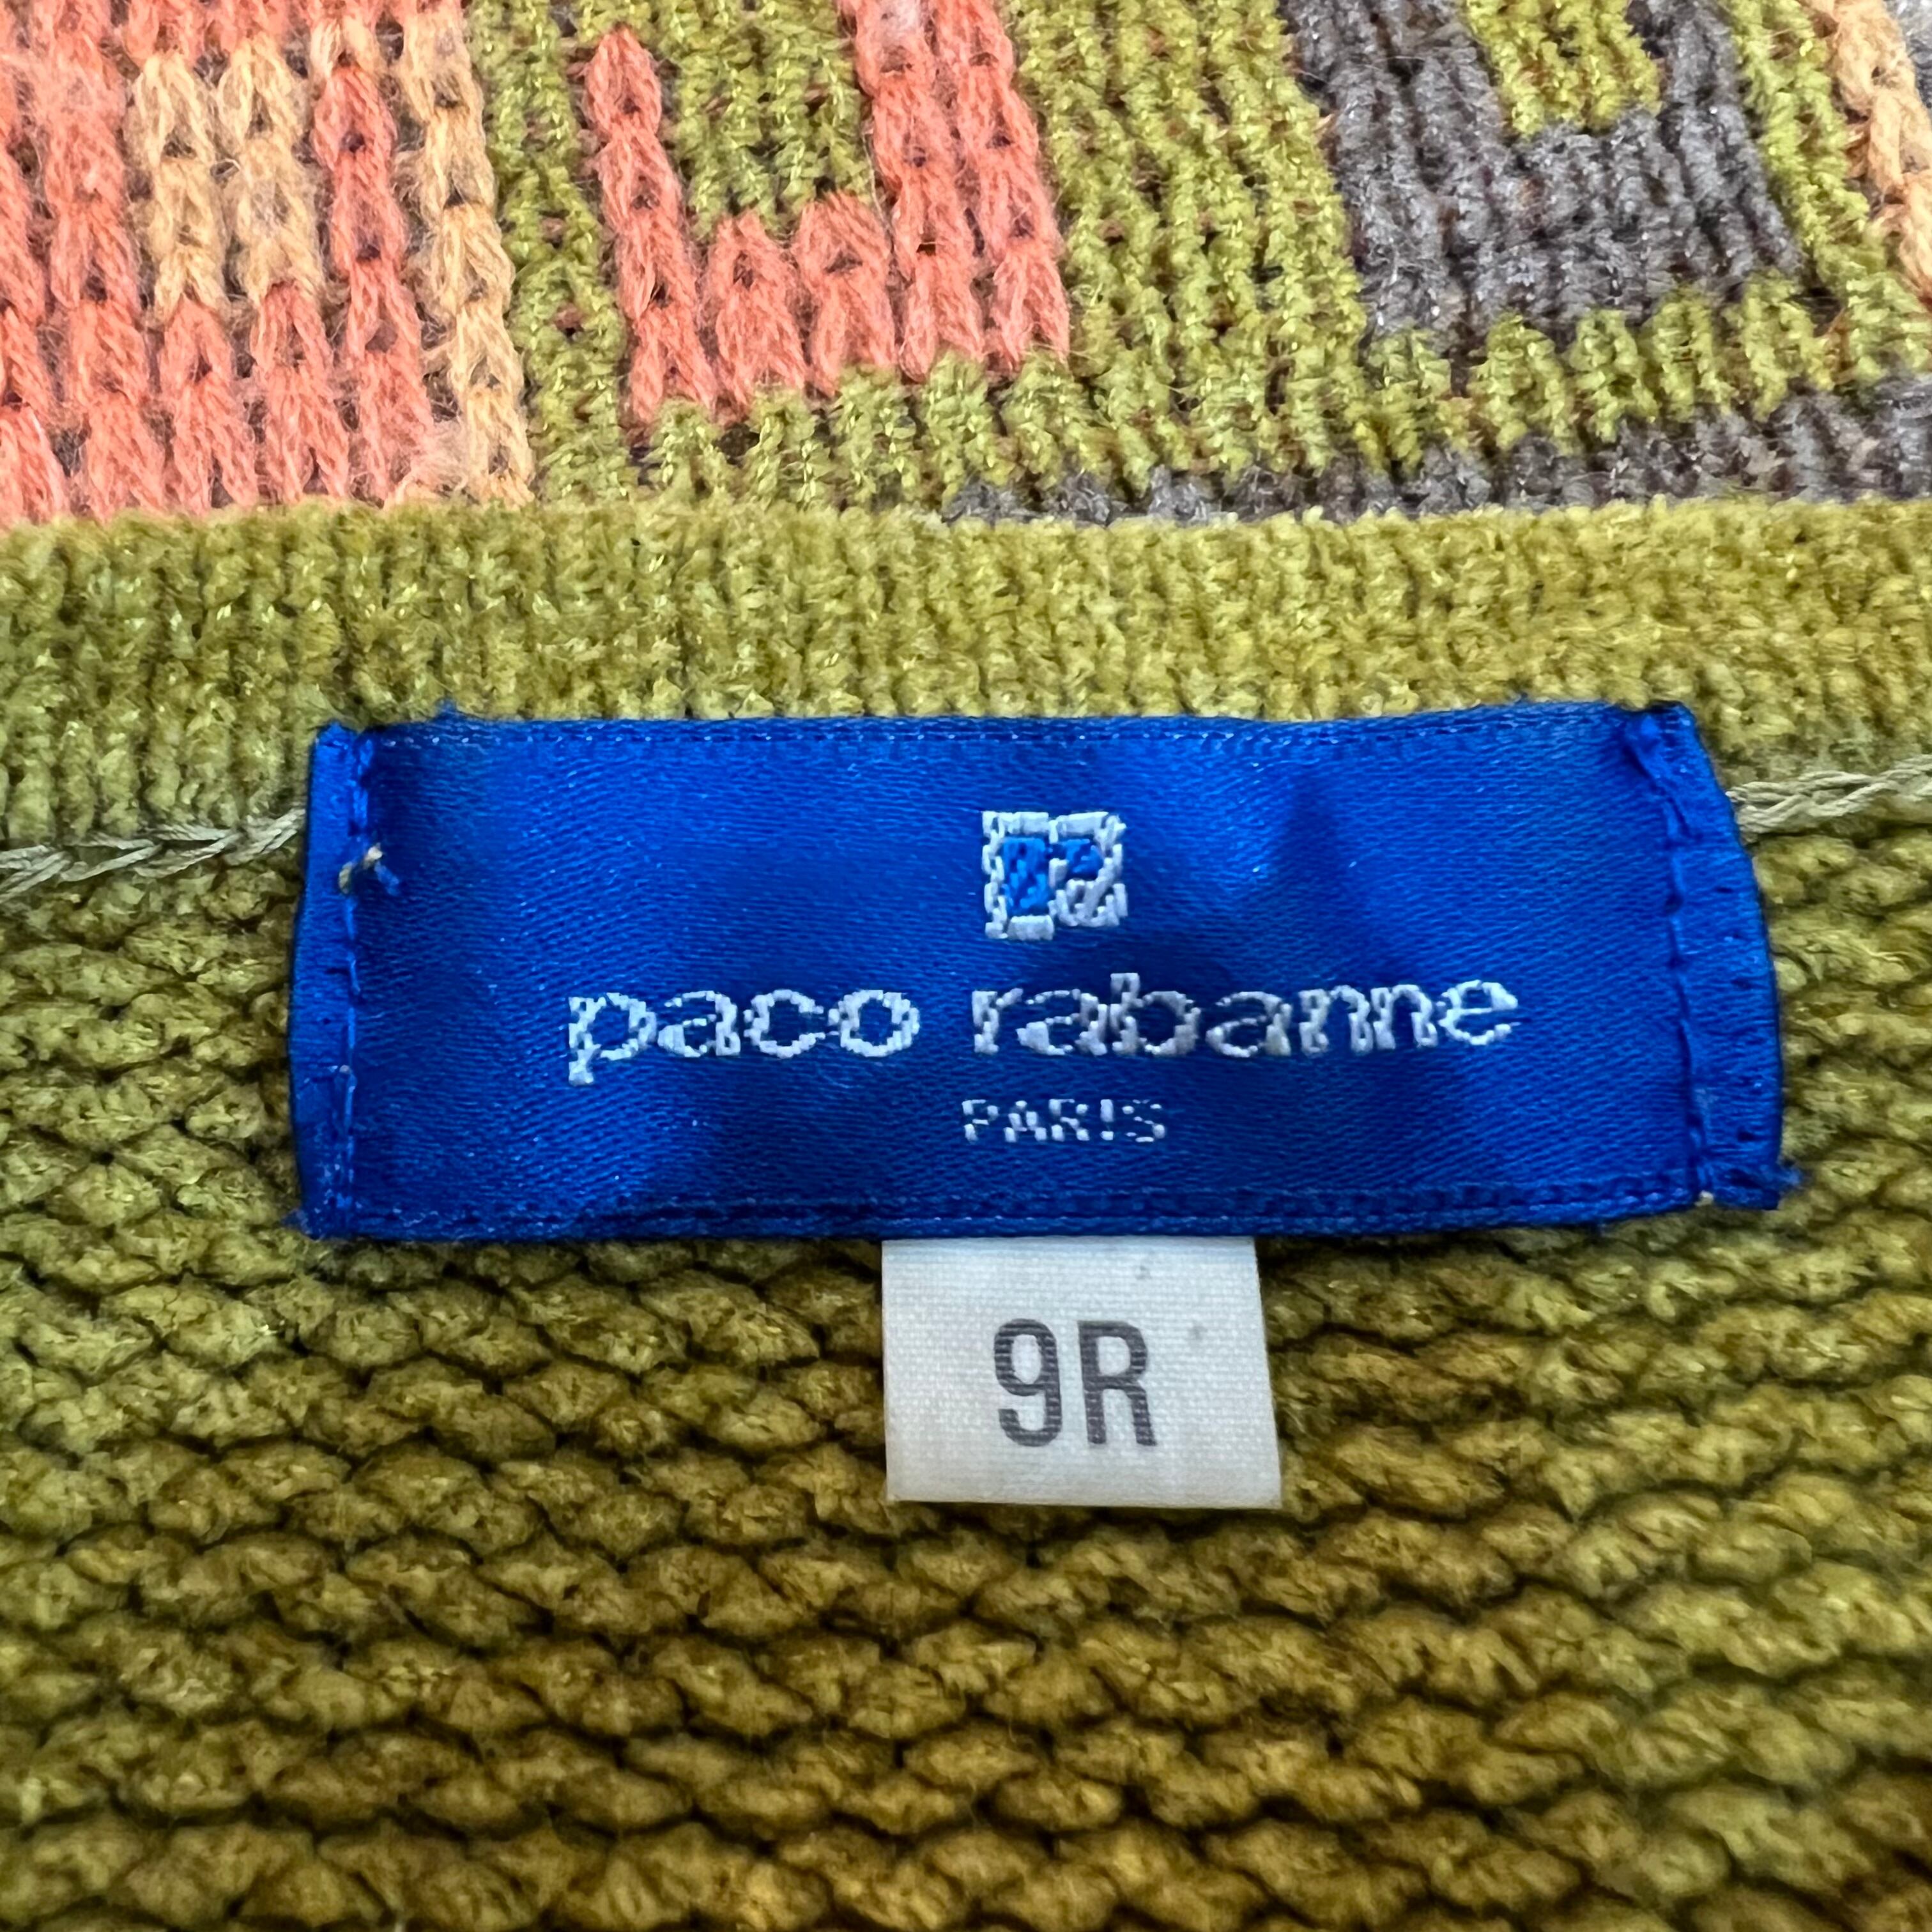 Paco rabanne (パコラバンヌ)ニットrabanne